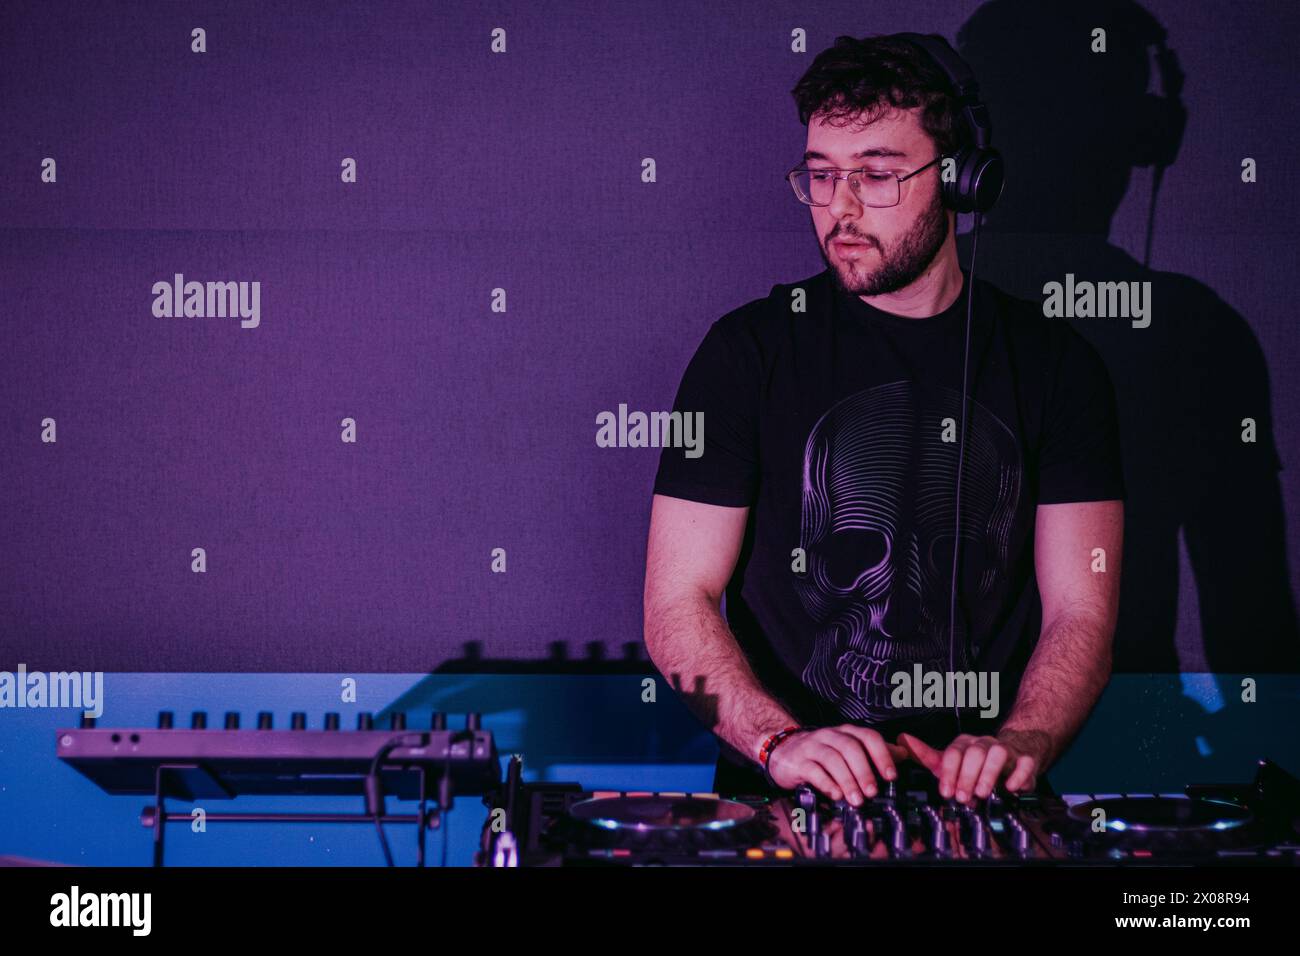 Ein fokussierter DJ mischt auf einer Konsole bei einem lebhaften Clubevent, hervorgehoben durch violette Farbtöne und stimmungsvolle Beleuchtung Stockfoto